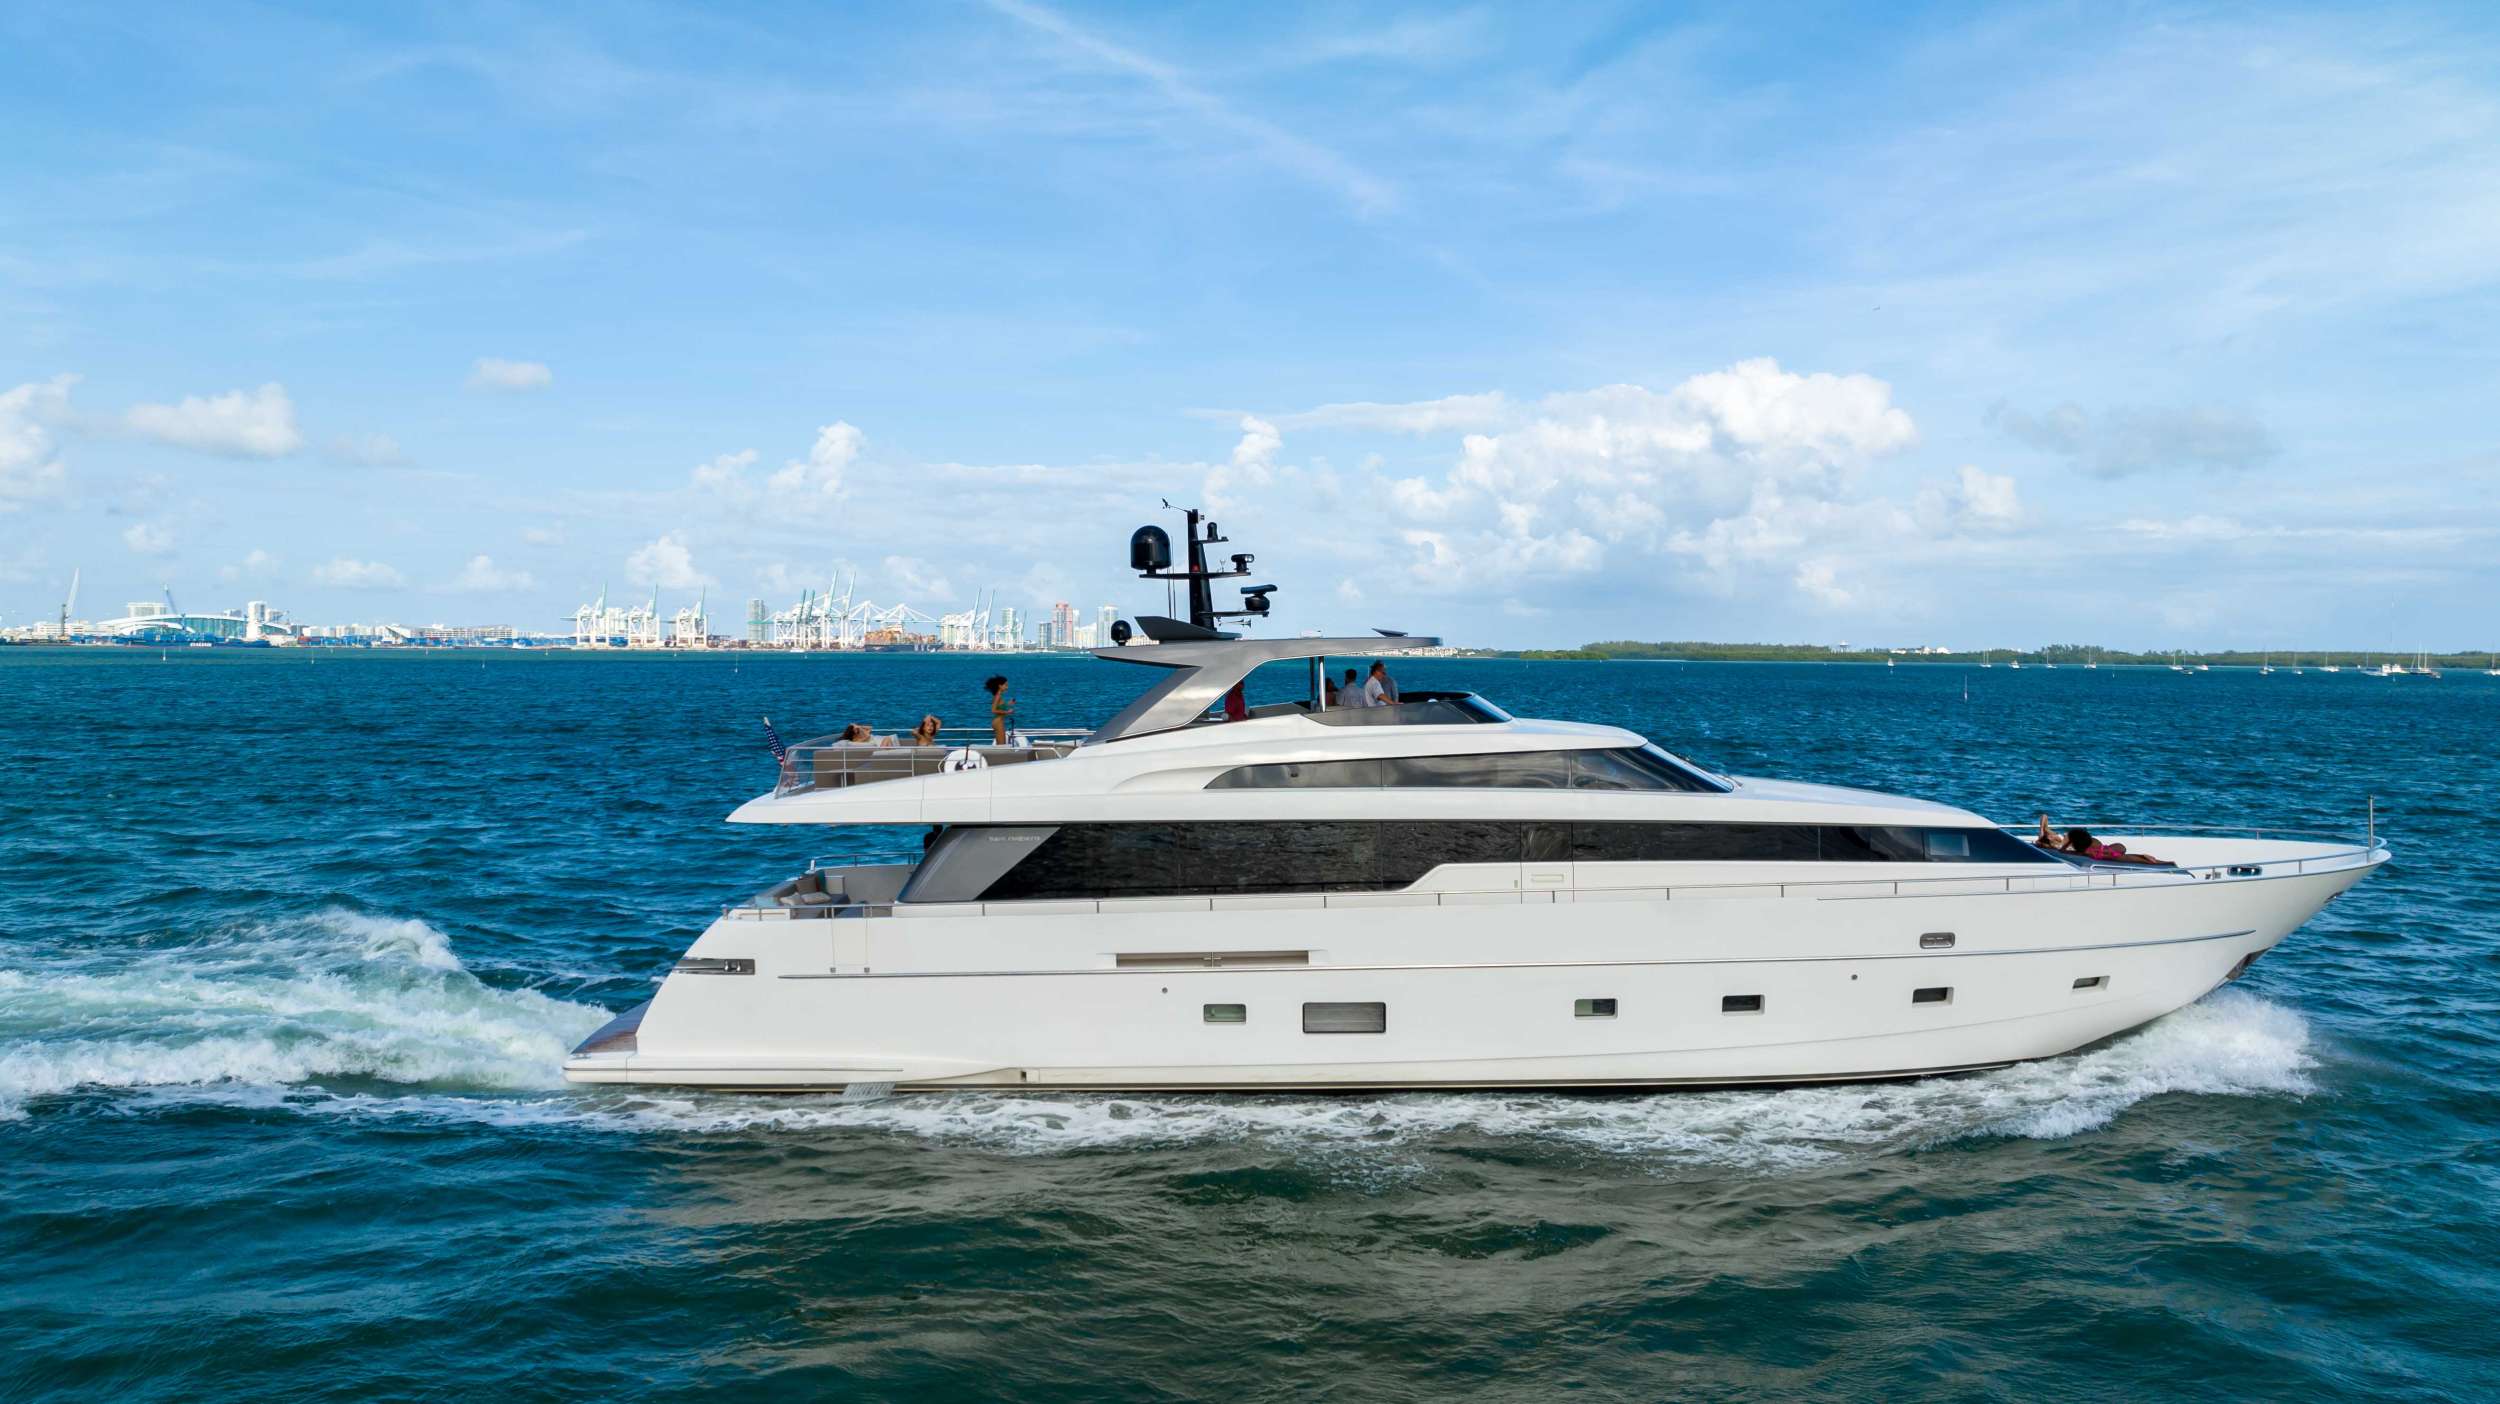 Astonish - Motor Boat Charter Bahamas & Boat hire in Florida & Bahamas 1